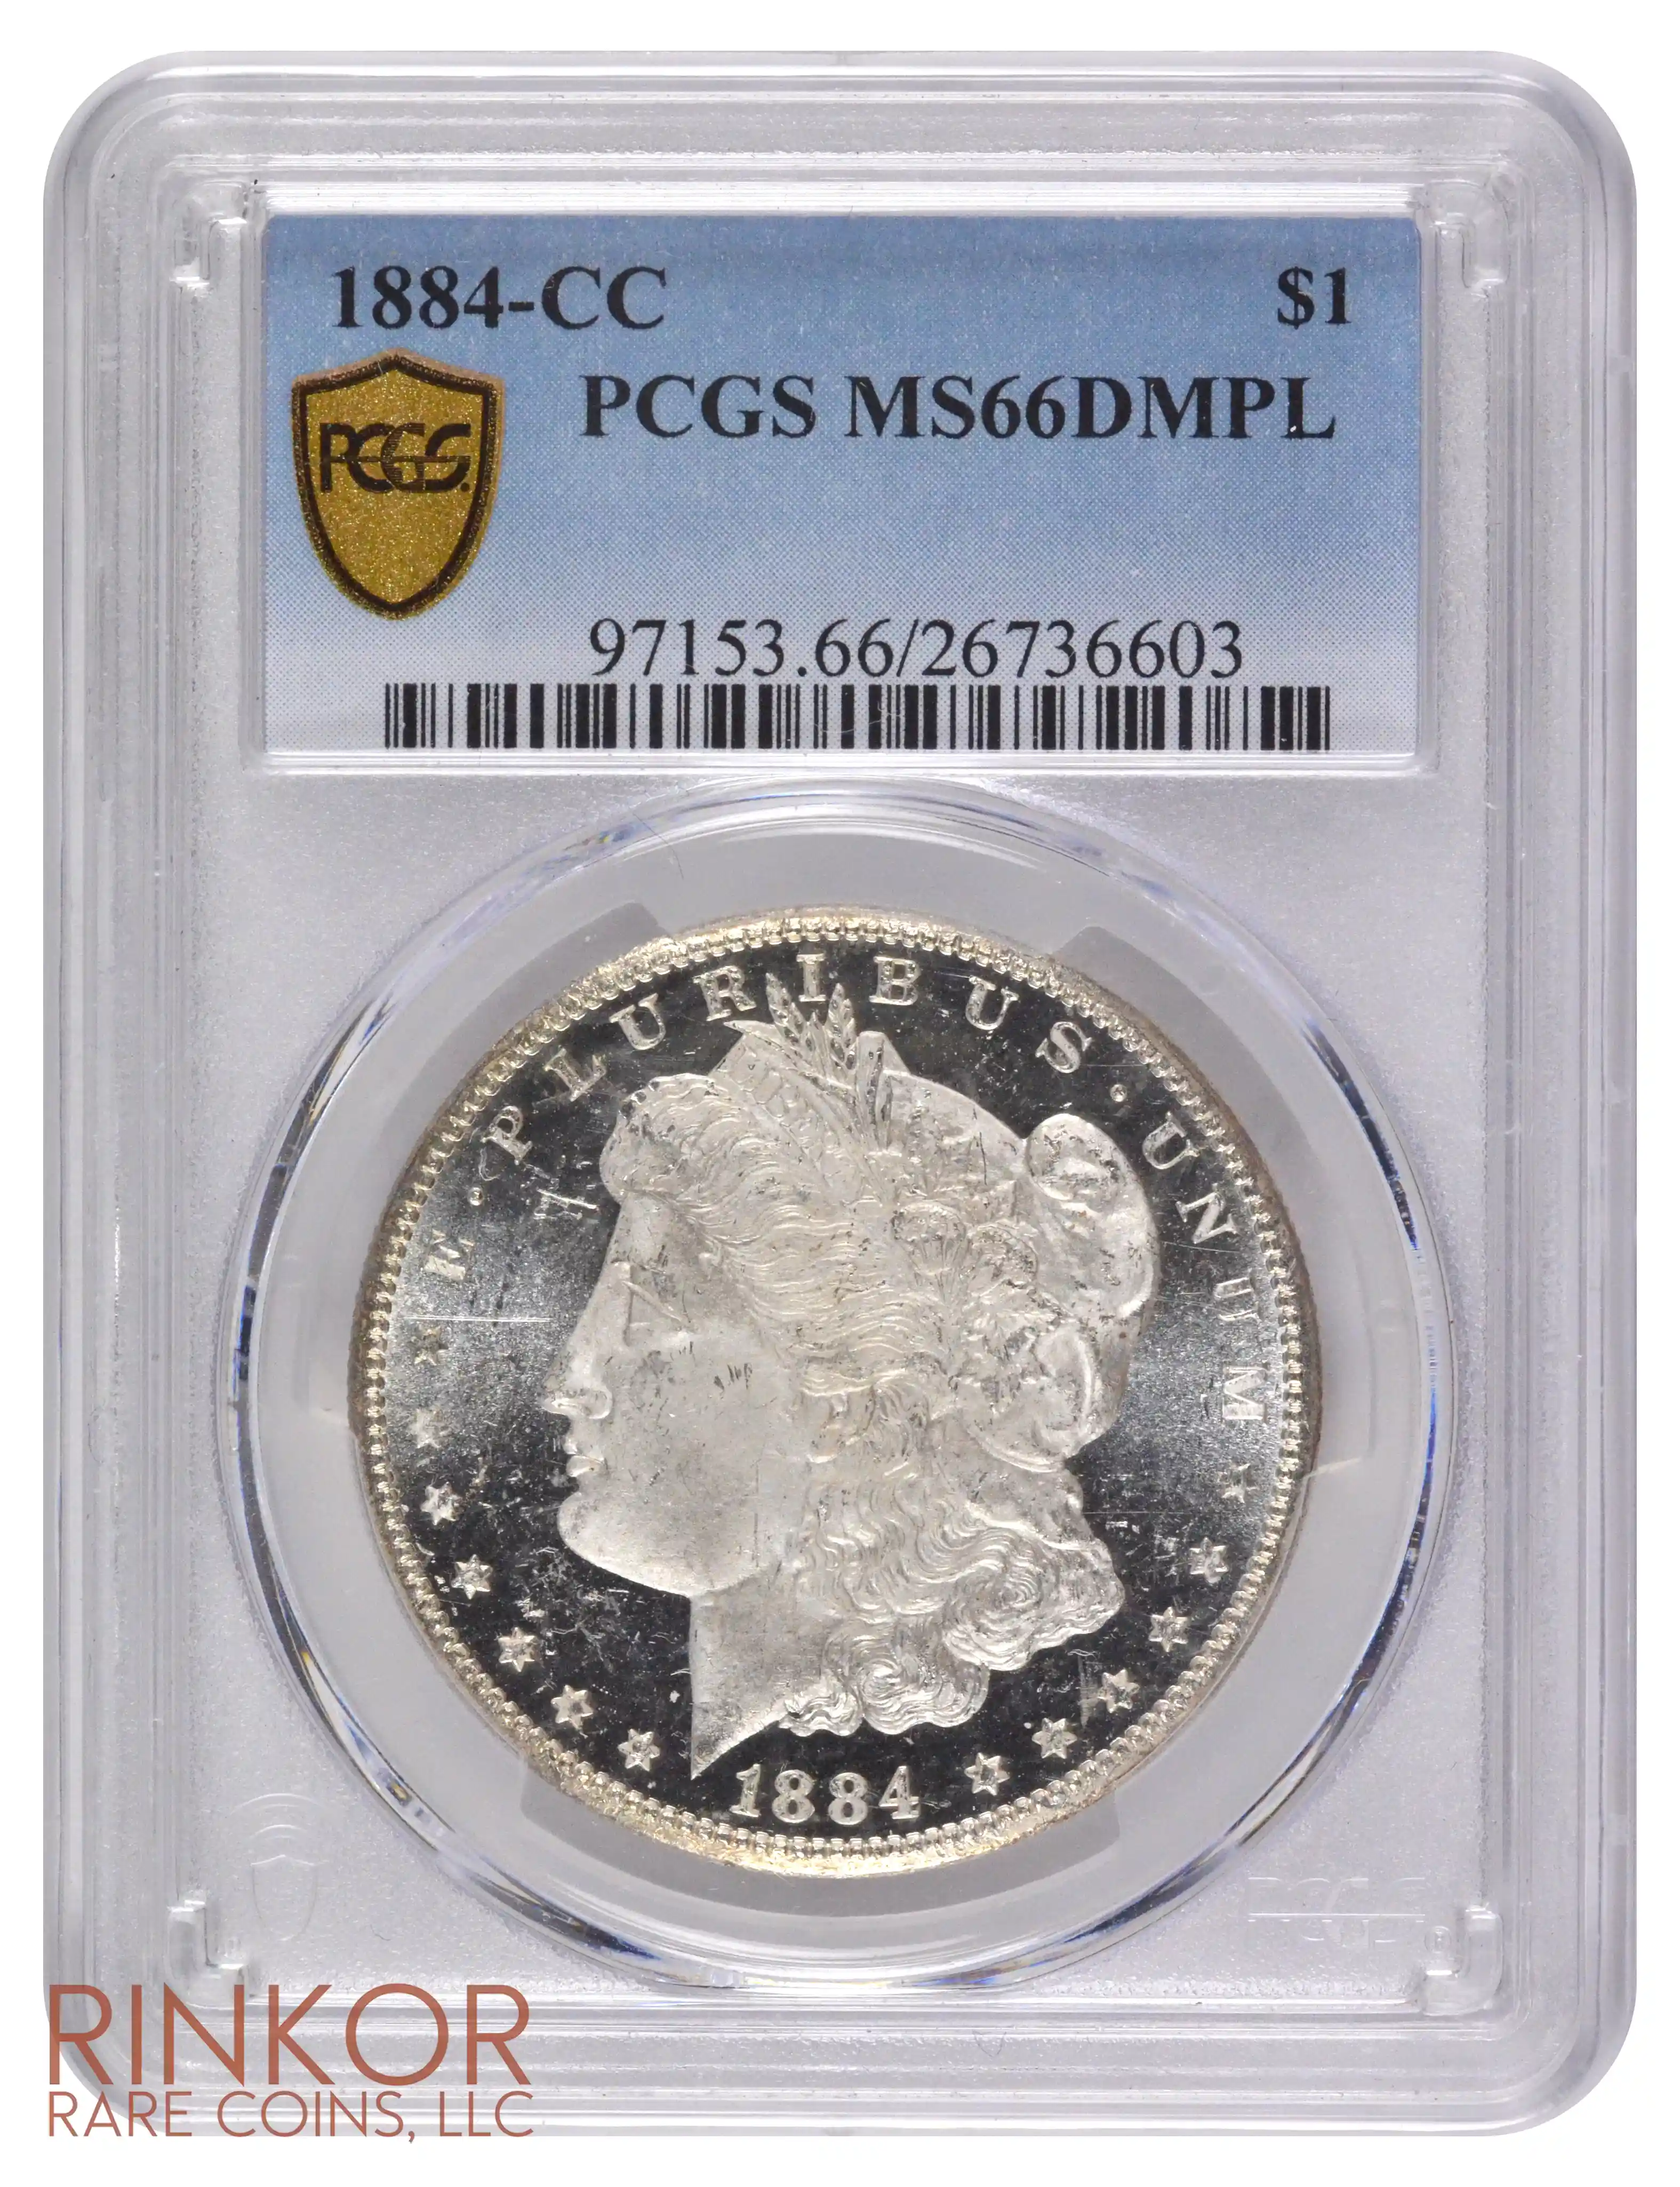 1884-CC $1 PCGS